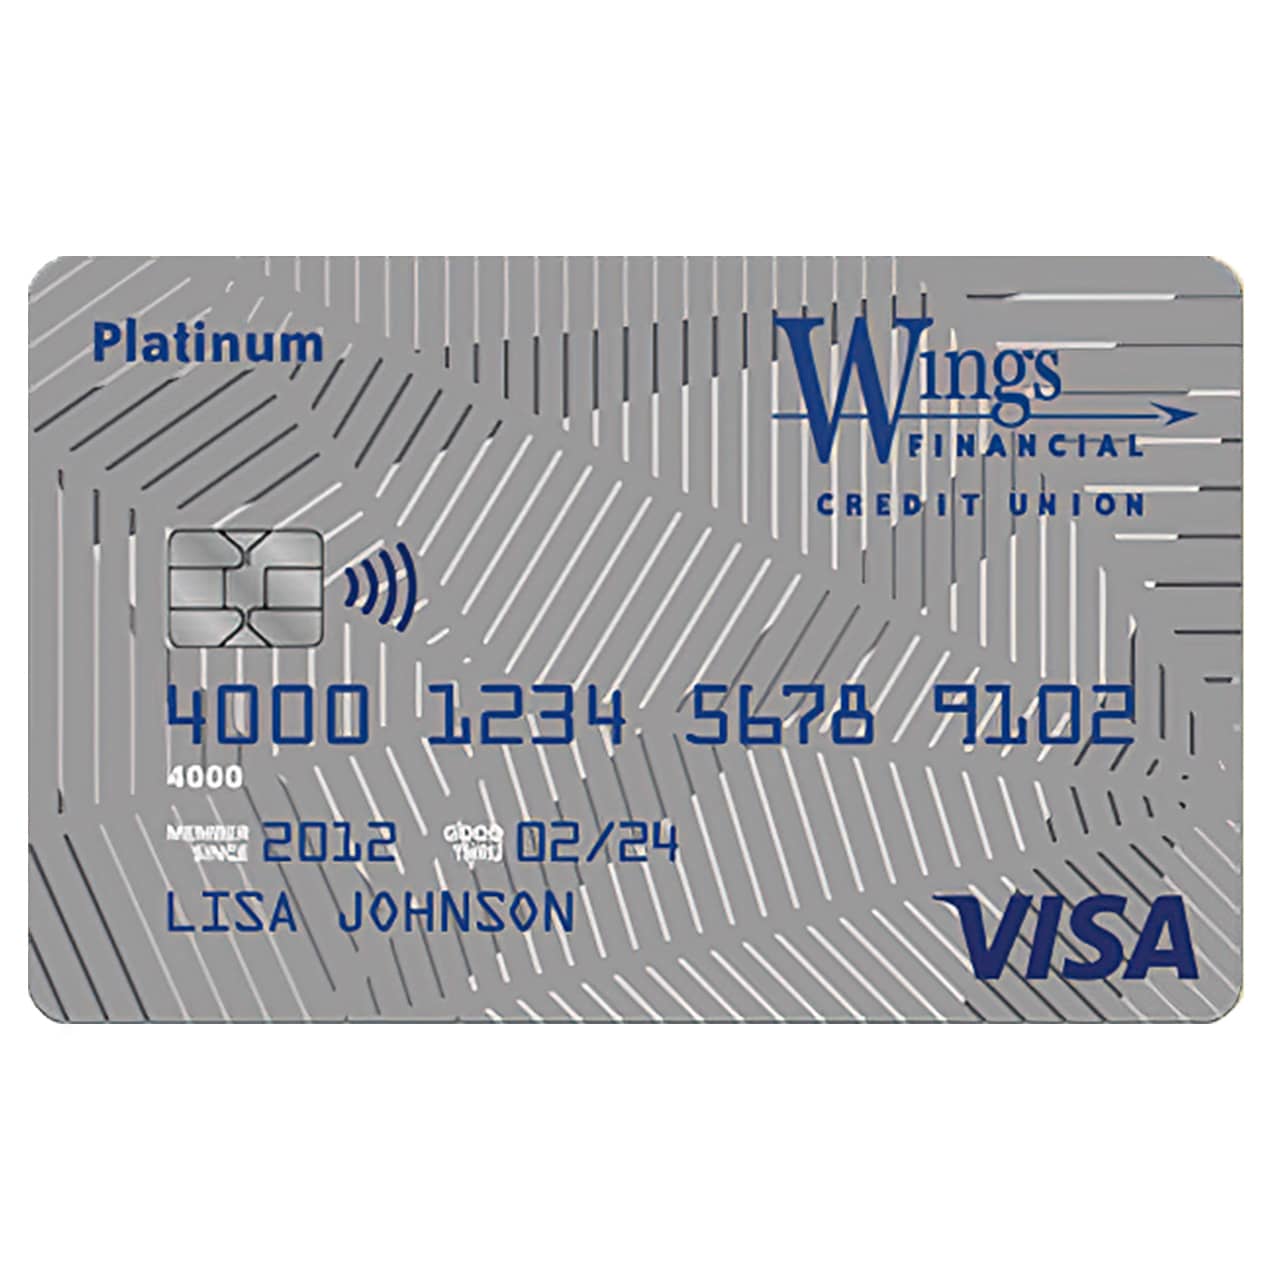 Wings Visa Platinum Card